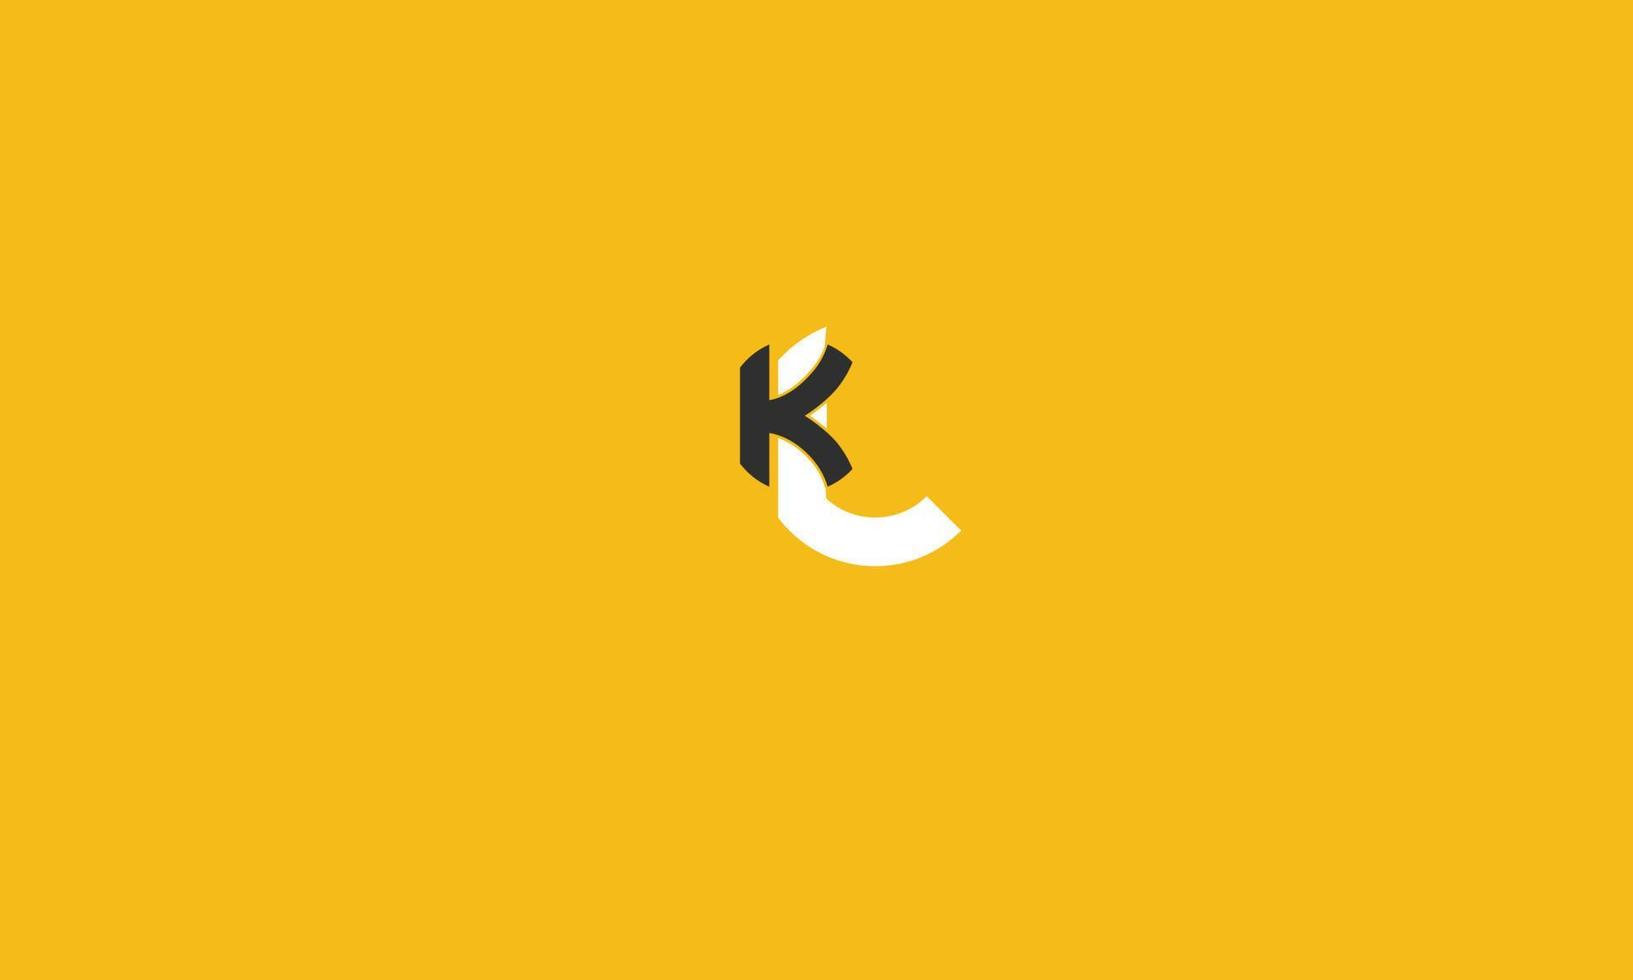 kl alfabeto letras iniciales monograma logo vector